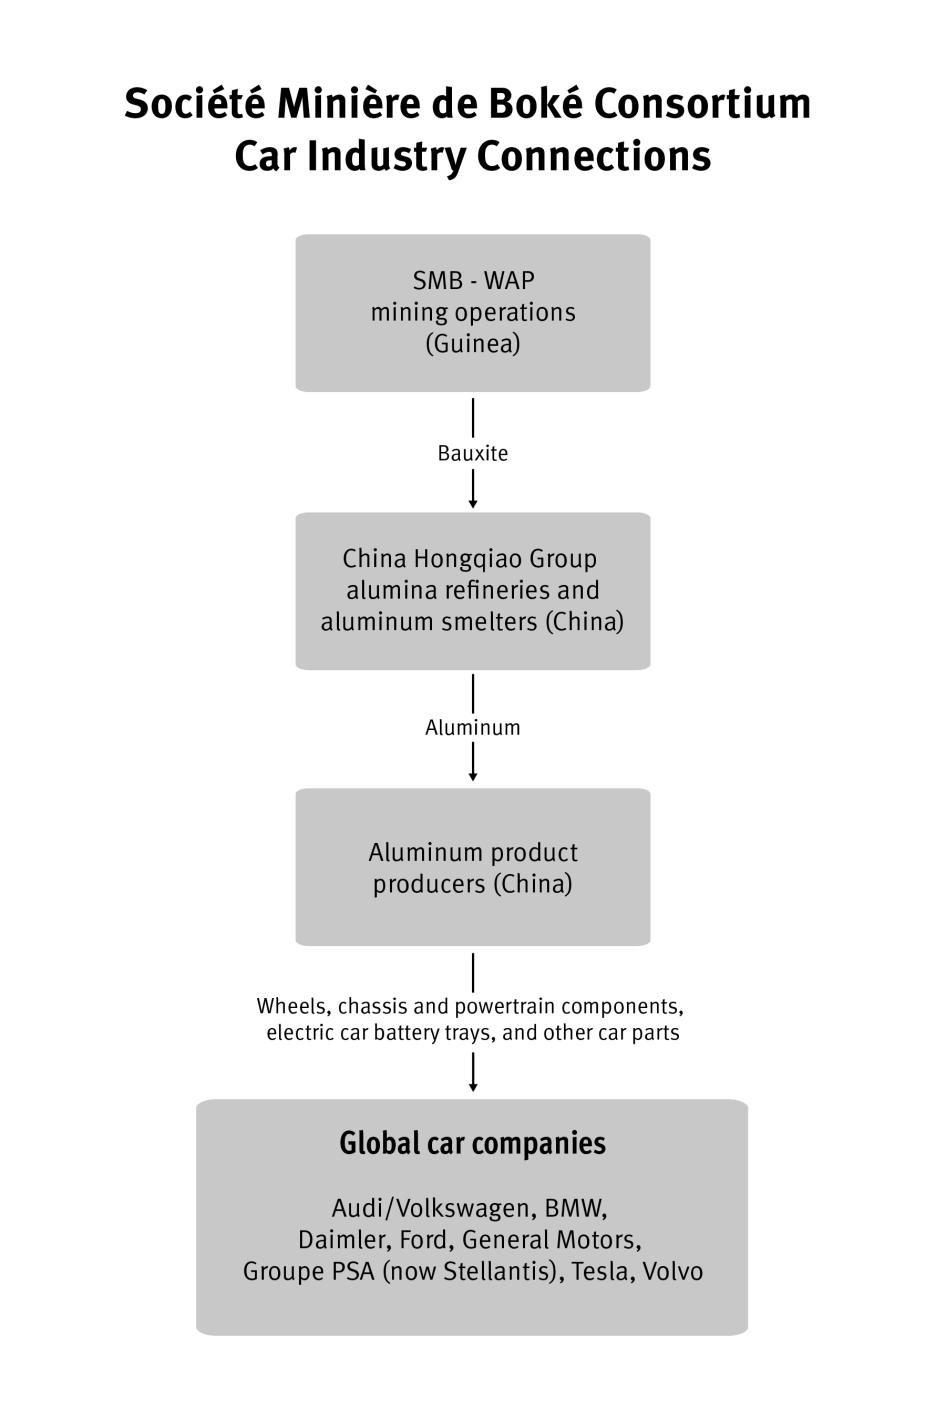 A flow chart detailing the supply chain of La Société Minière de Boké 